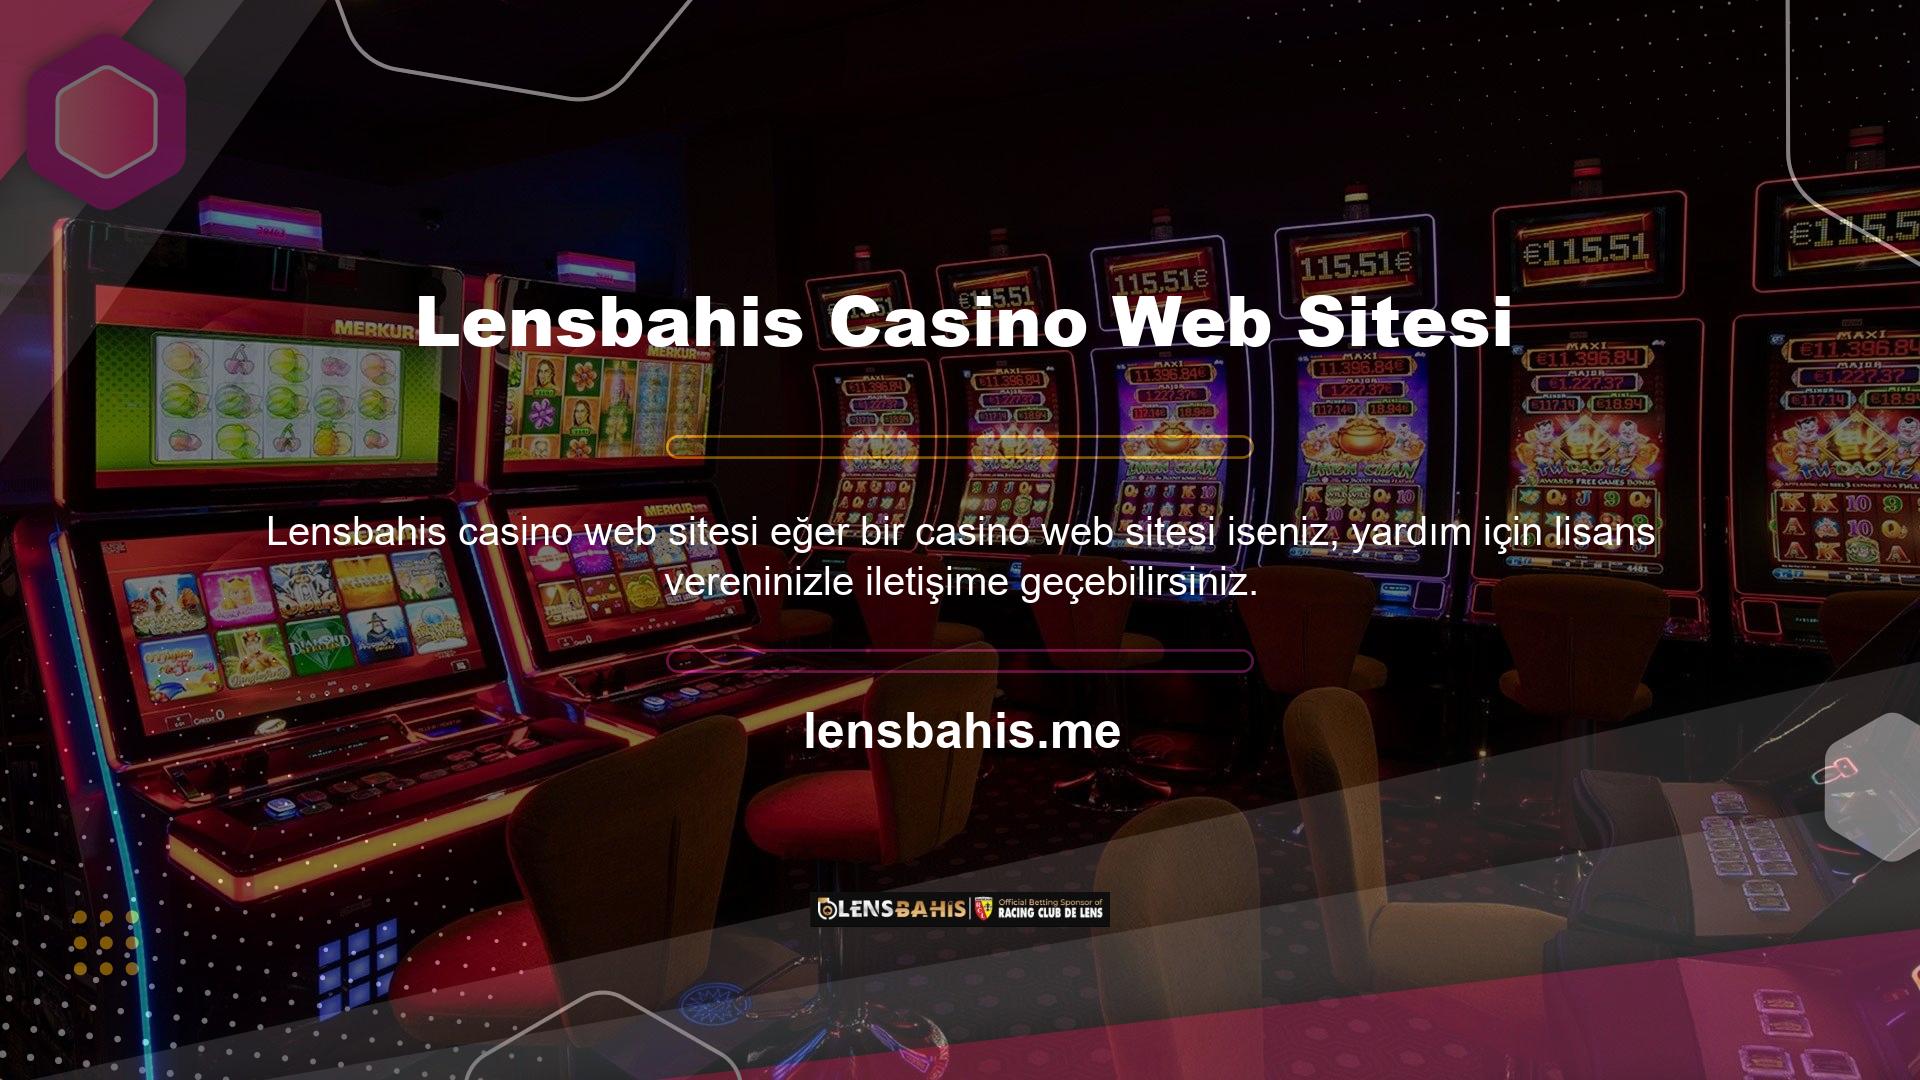 Lensbahis Casino web sitesi ile bağlantı sorunlarını çözmek için web sitesinde takip etmeniz gereken sosyal medya hesaplarının adresleri şunlardır: Lensbahis ülkemizde slot makine oyunlarından para kazanmaya devam eden casino sitelerinden biridir